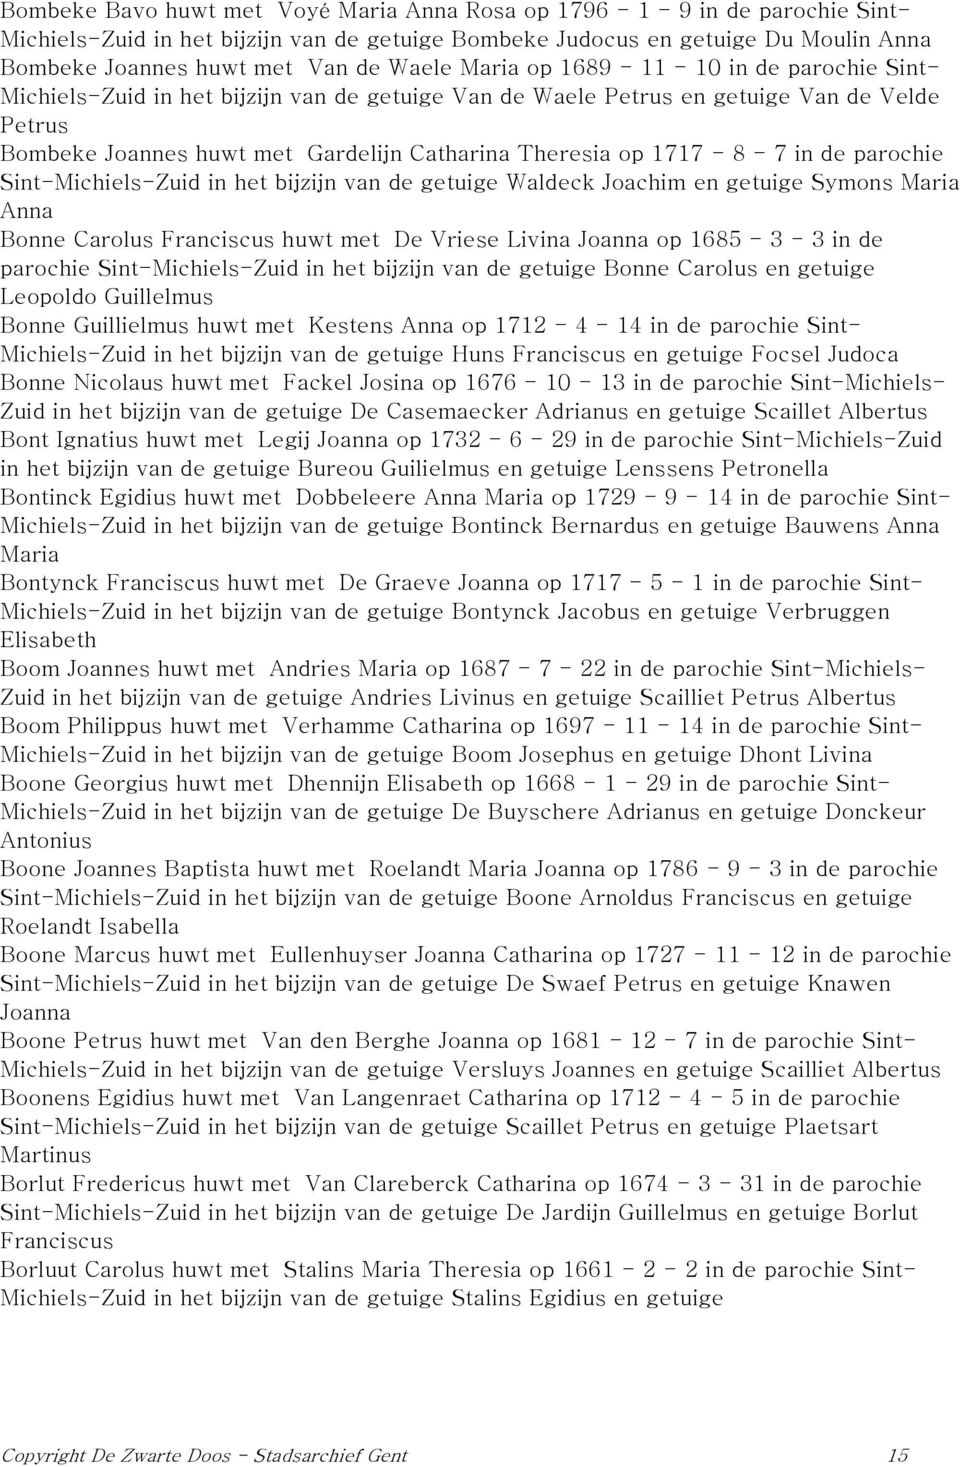 op 1717-8 - 7 in de parochie Sint-Michiels-Zuid in het bijzijn van de getuige Waldeck Joachim en getuige Symons Maria Anna Bonne Carolus Franciscus huwt met De Vriese Livina Joanna op 1685-3 - 3 in